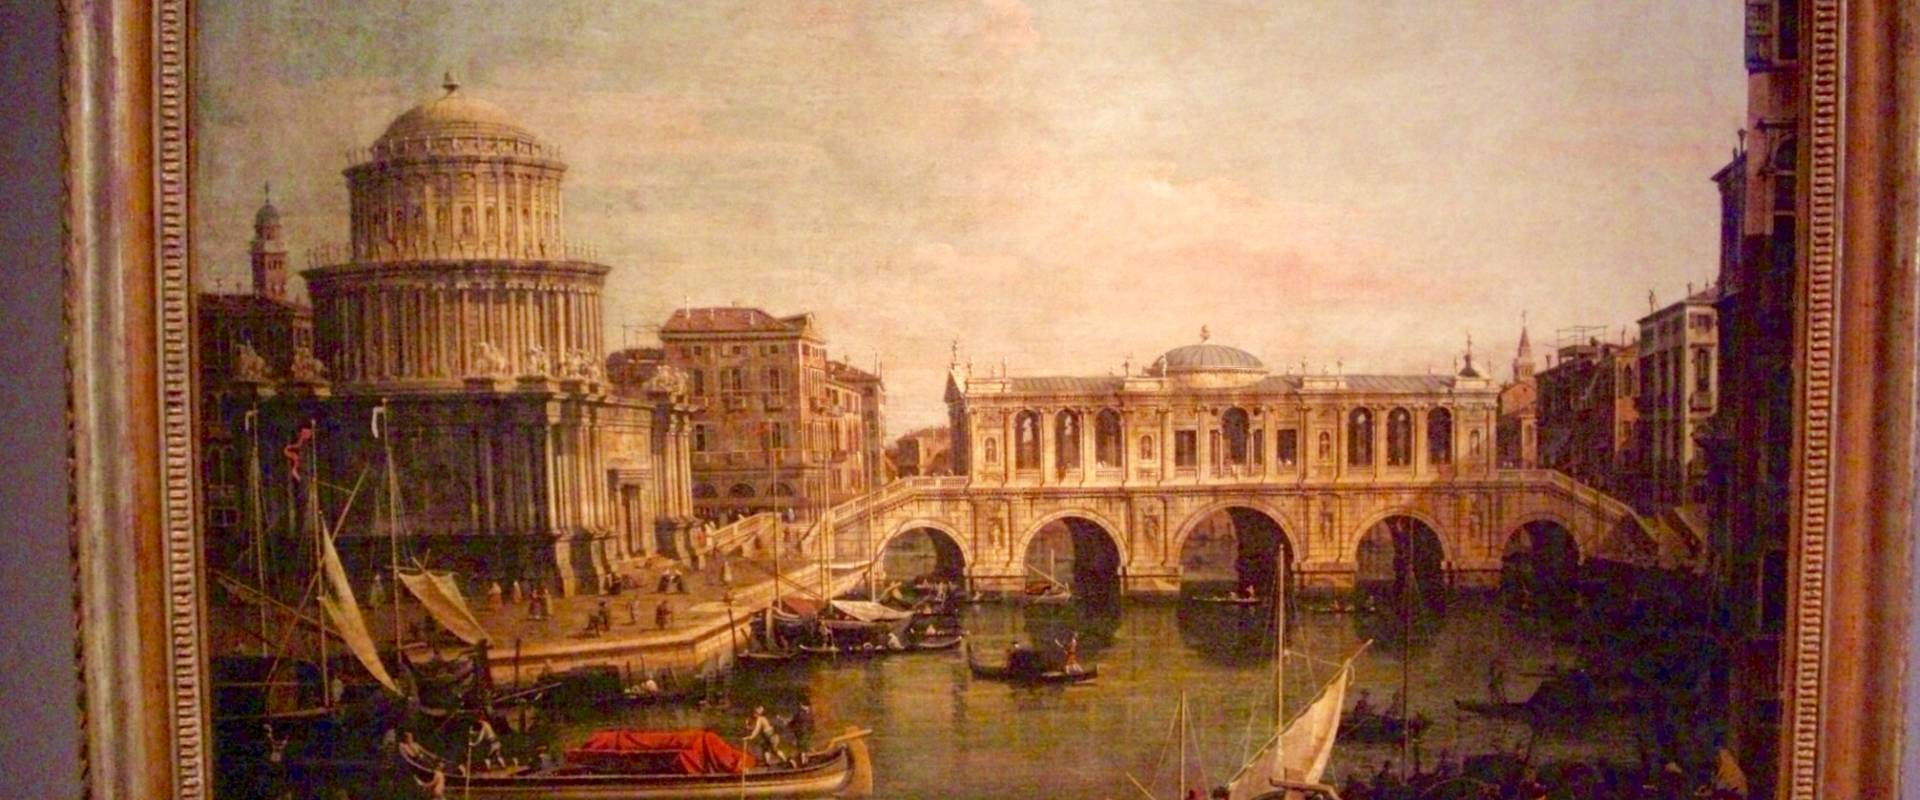 Canaletto "Capriccio con edifici palladiani" foto di Clawsb